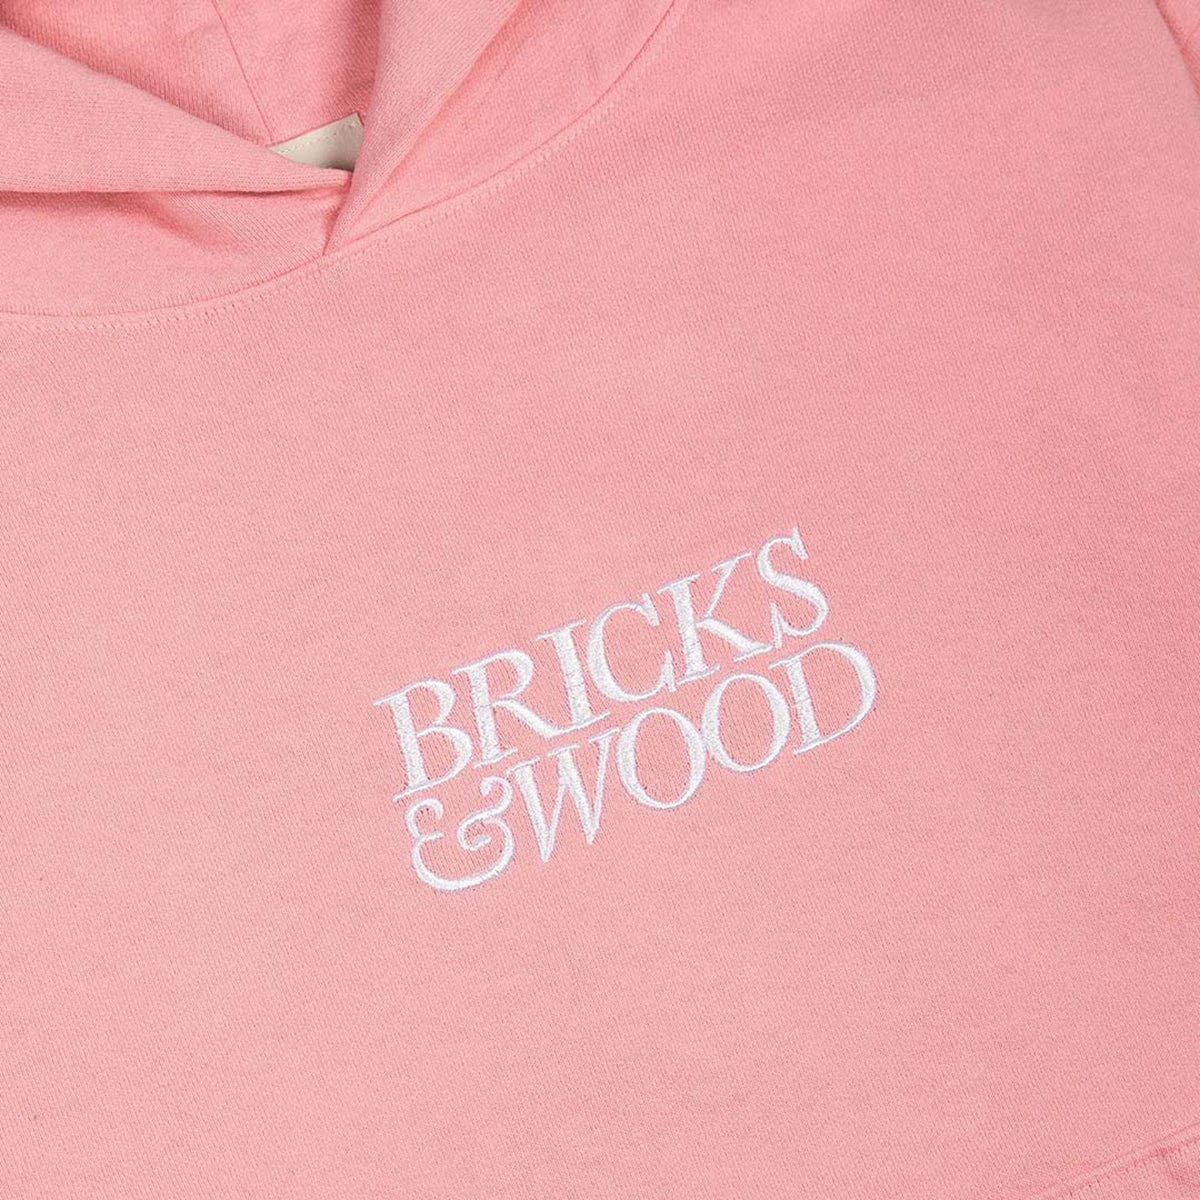 Bricks & Wood Hoodies & Sweatshirts LOGO HOODIE